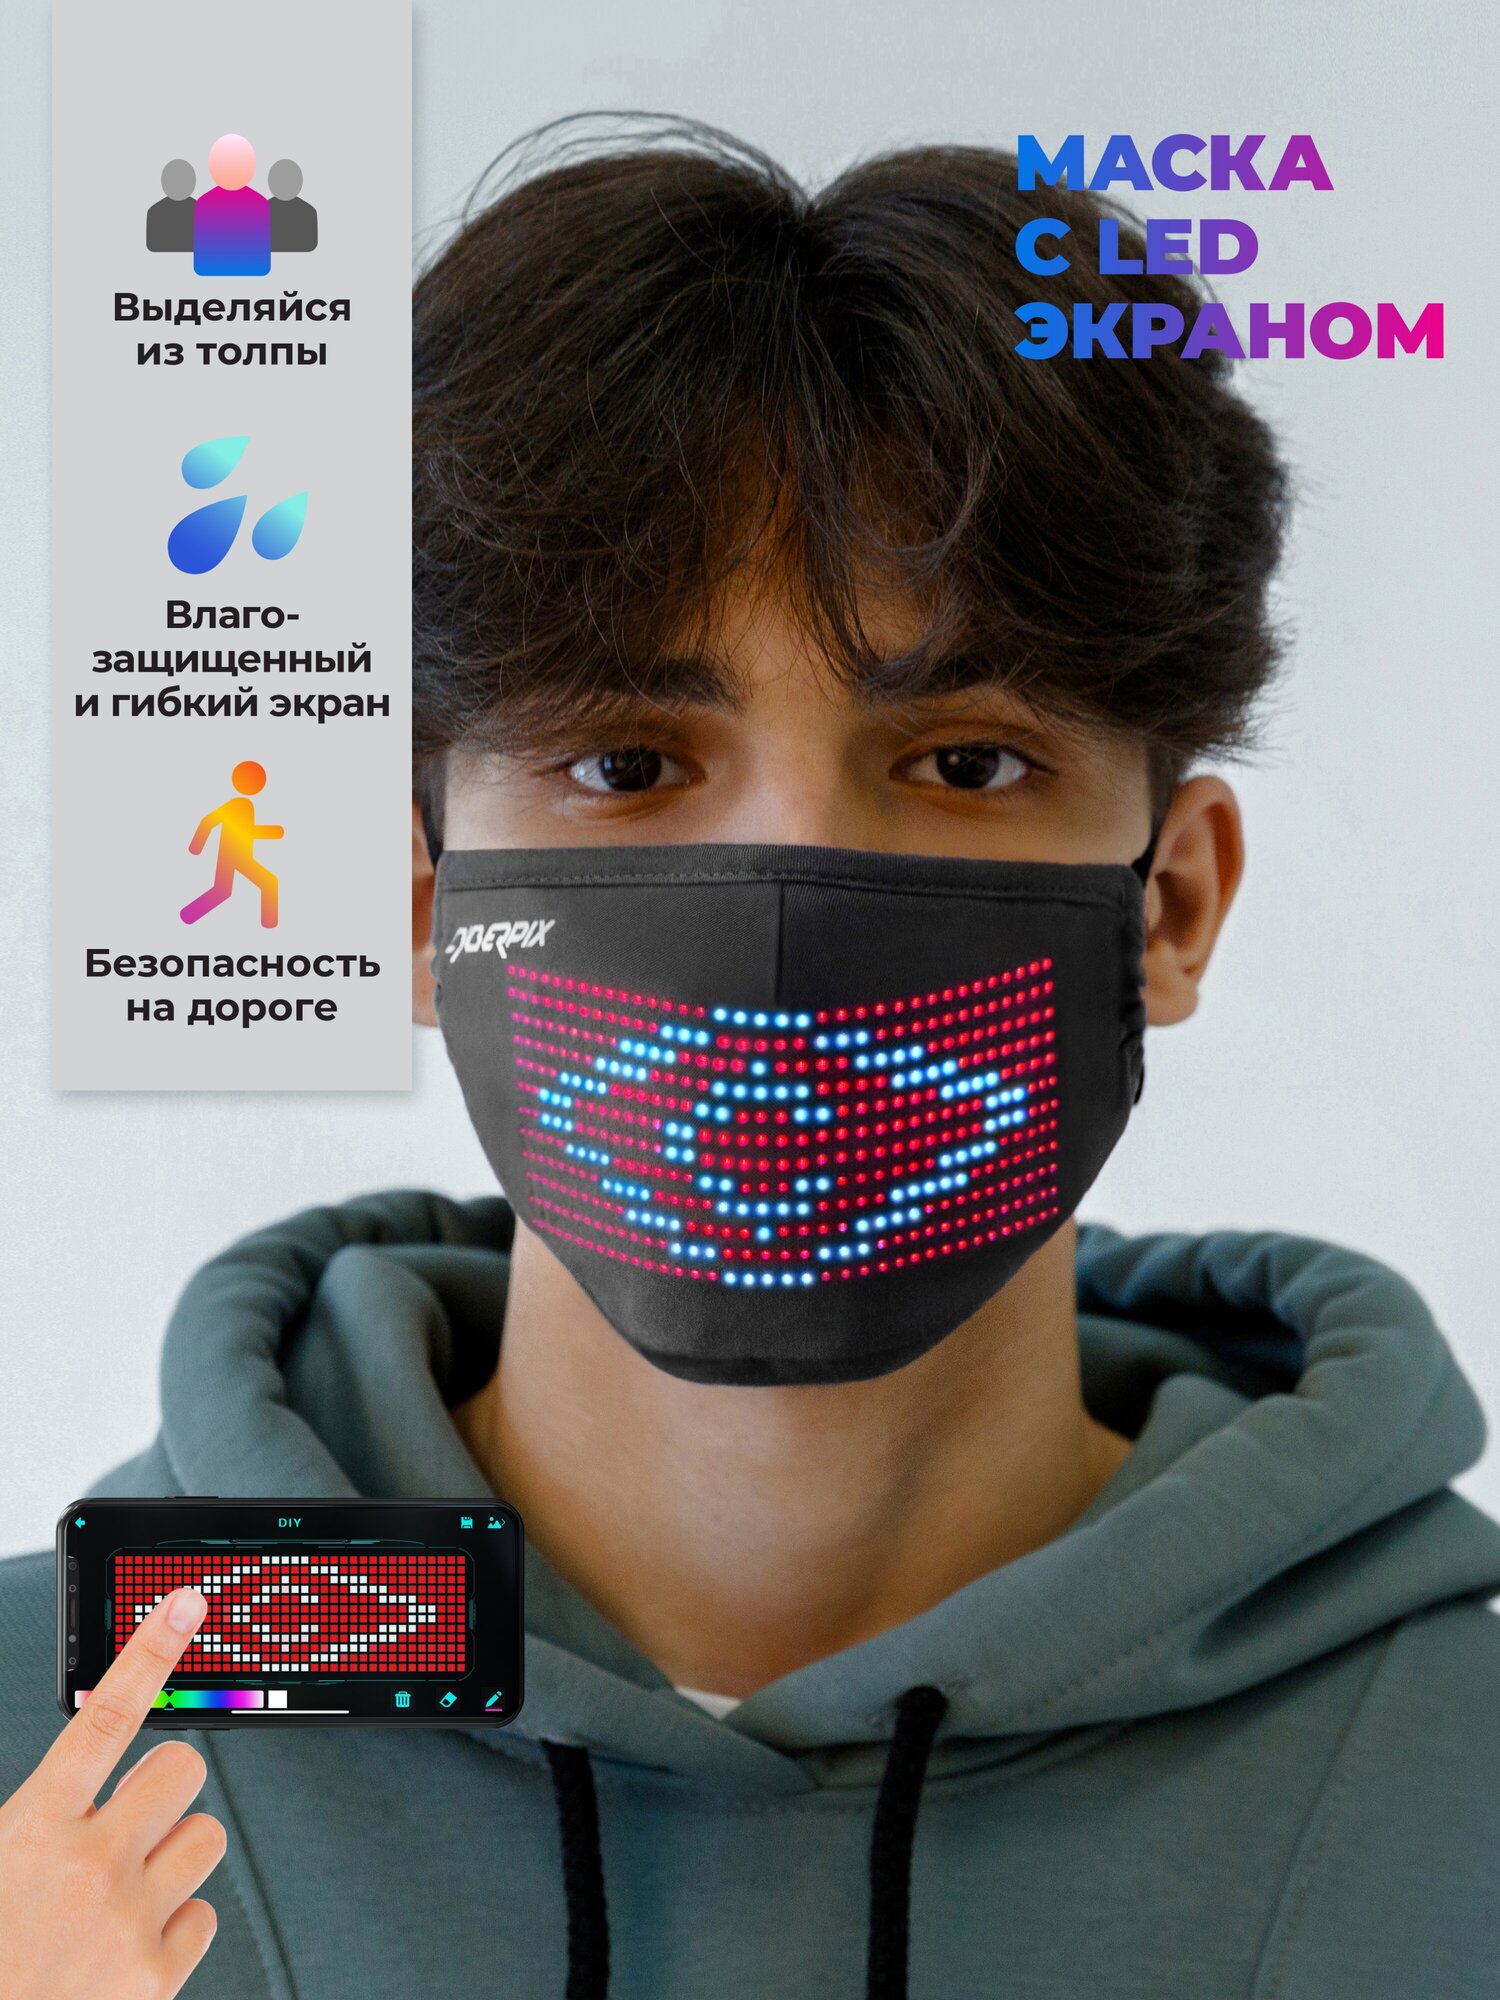 Cyberpix / Многоразовая маска для лица тканевая с LED экраном черная защитная без респиратора набор без клапана, с любым принтом и рисунком, хлопковая